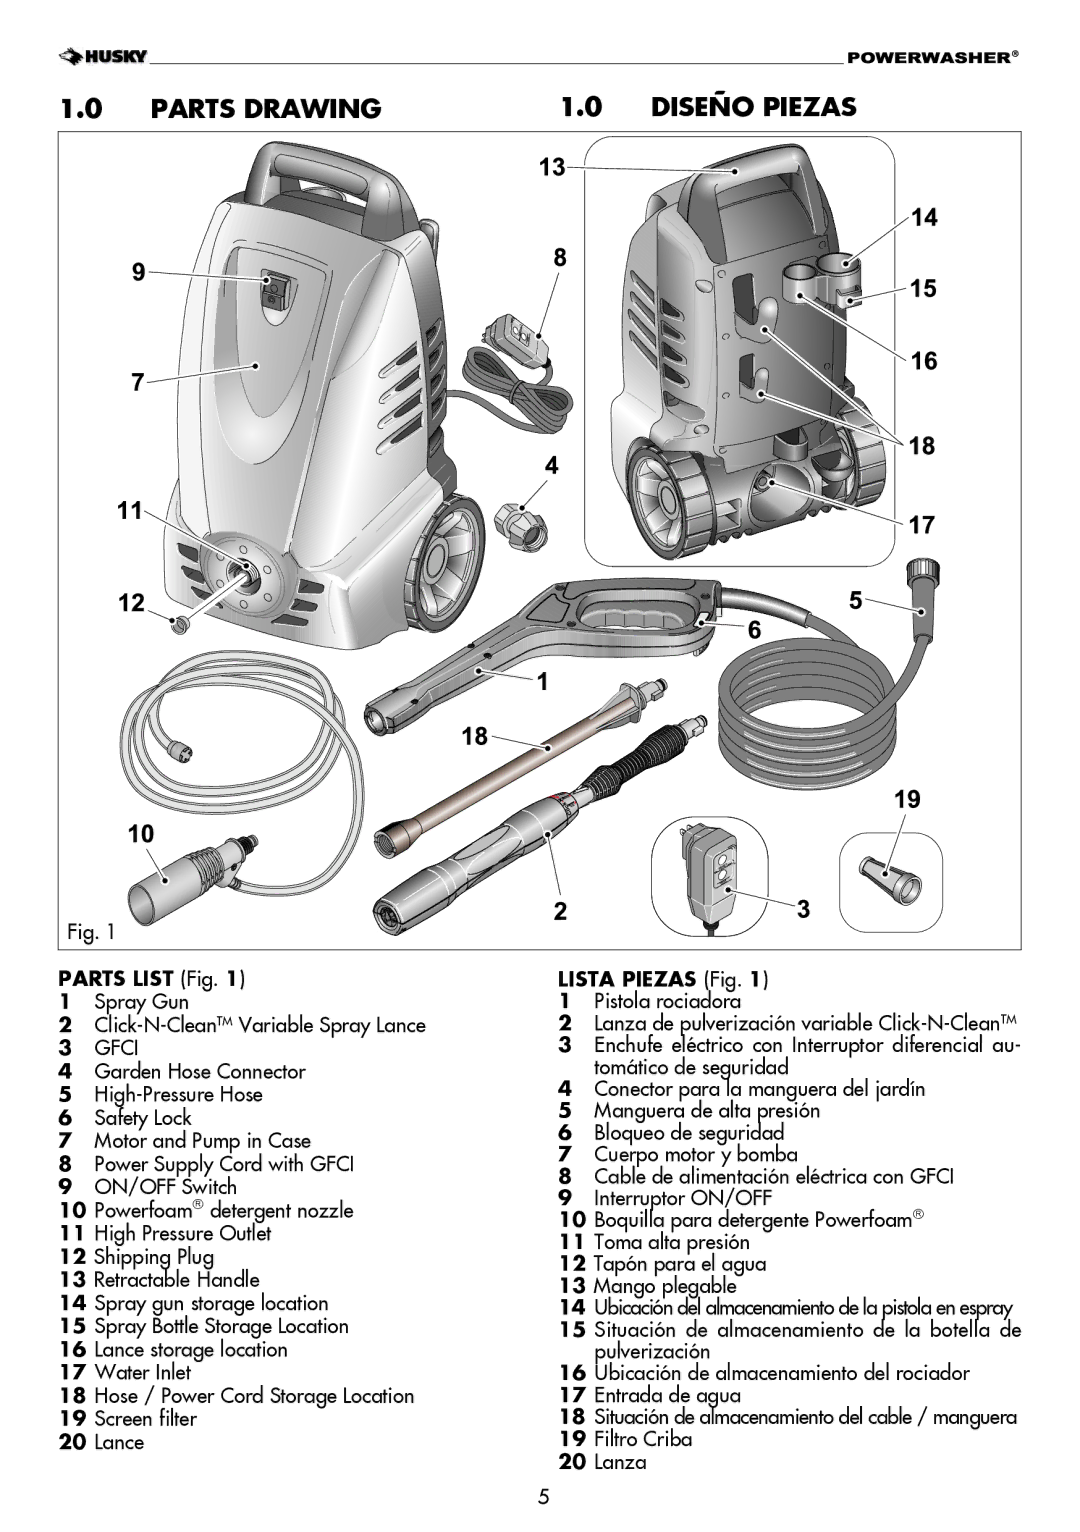 Husky H1600 Parts Drawing Diseño Piezas, Parts List Fig, Spray Gun Click-N-CleanTMVariable Spray Lance, Lista Piezas Fig 